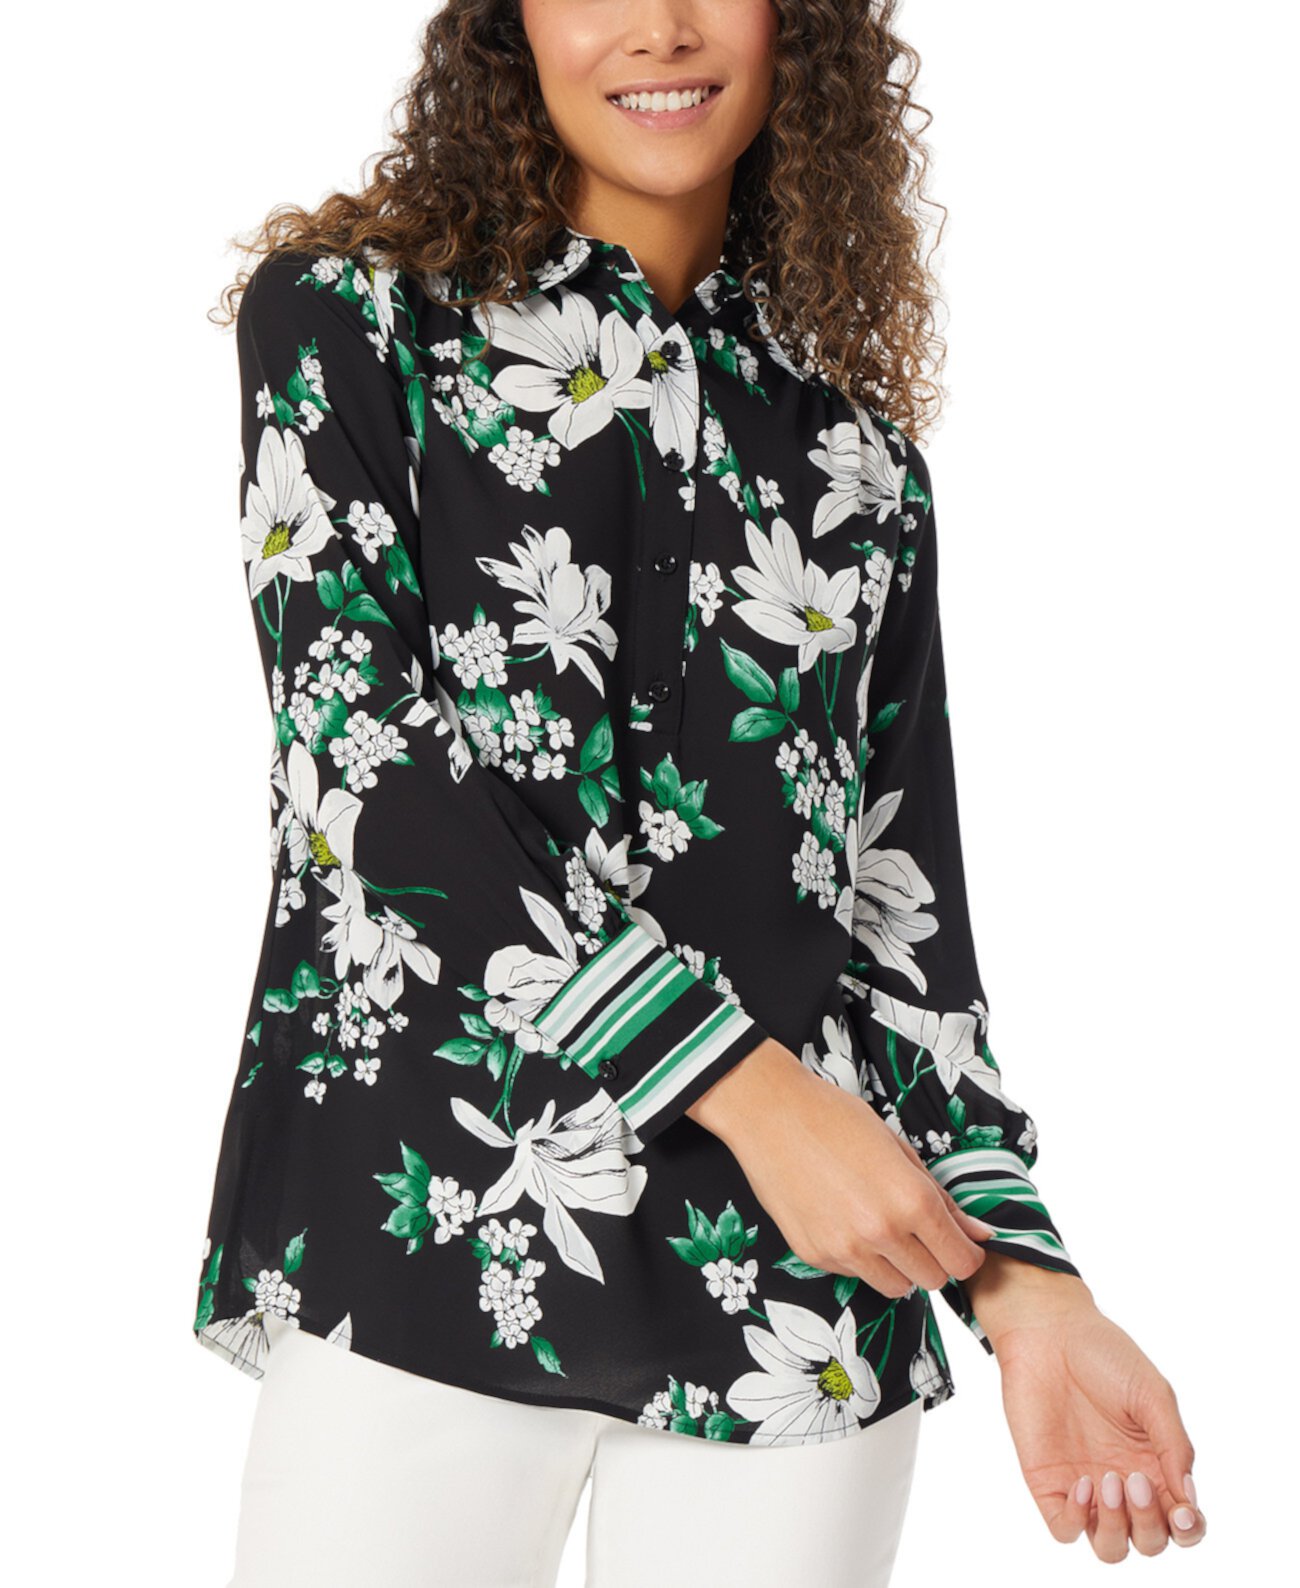 Женская блузка-туника с длинными рукавами и цветочным принтом Jones New York